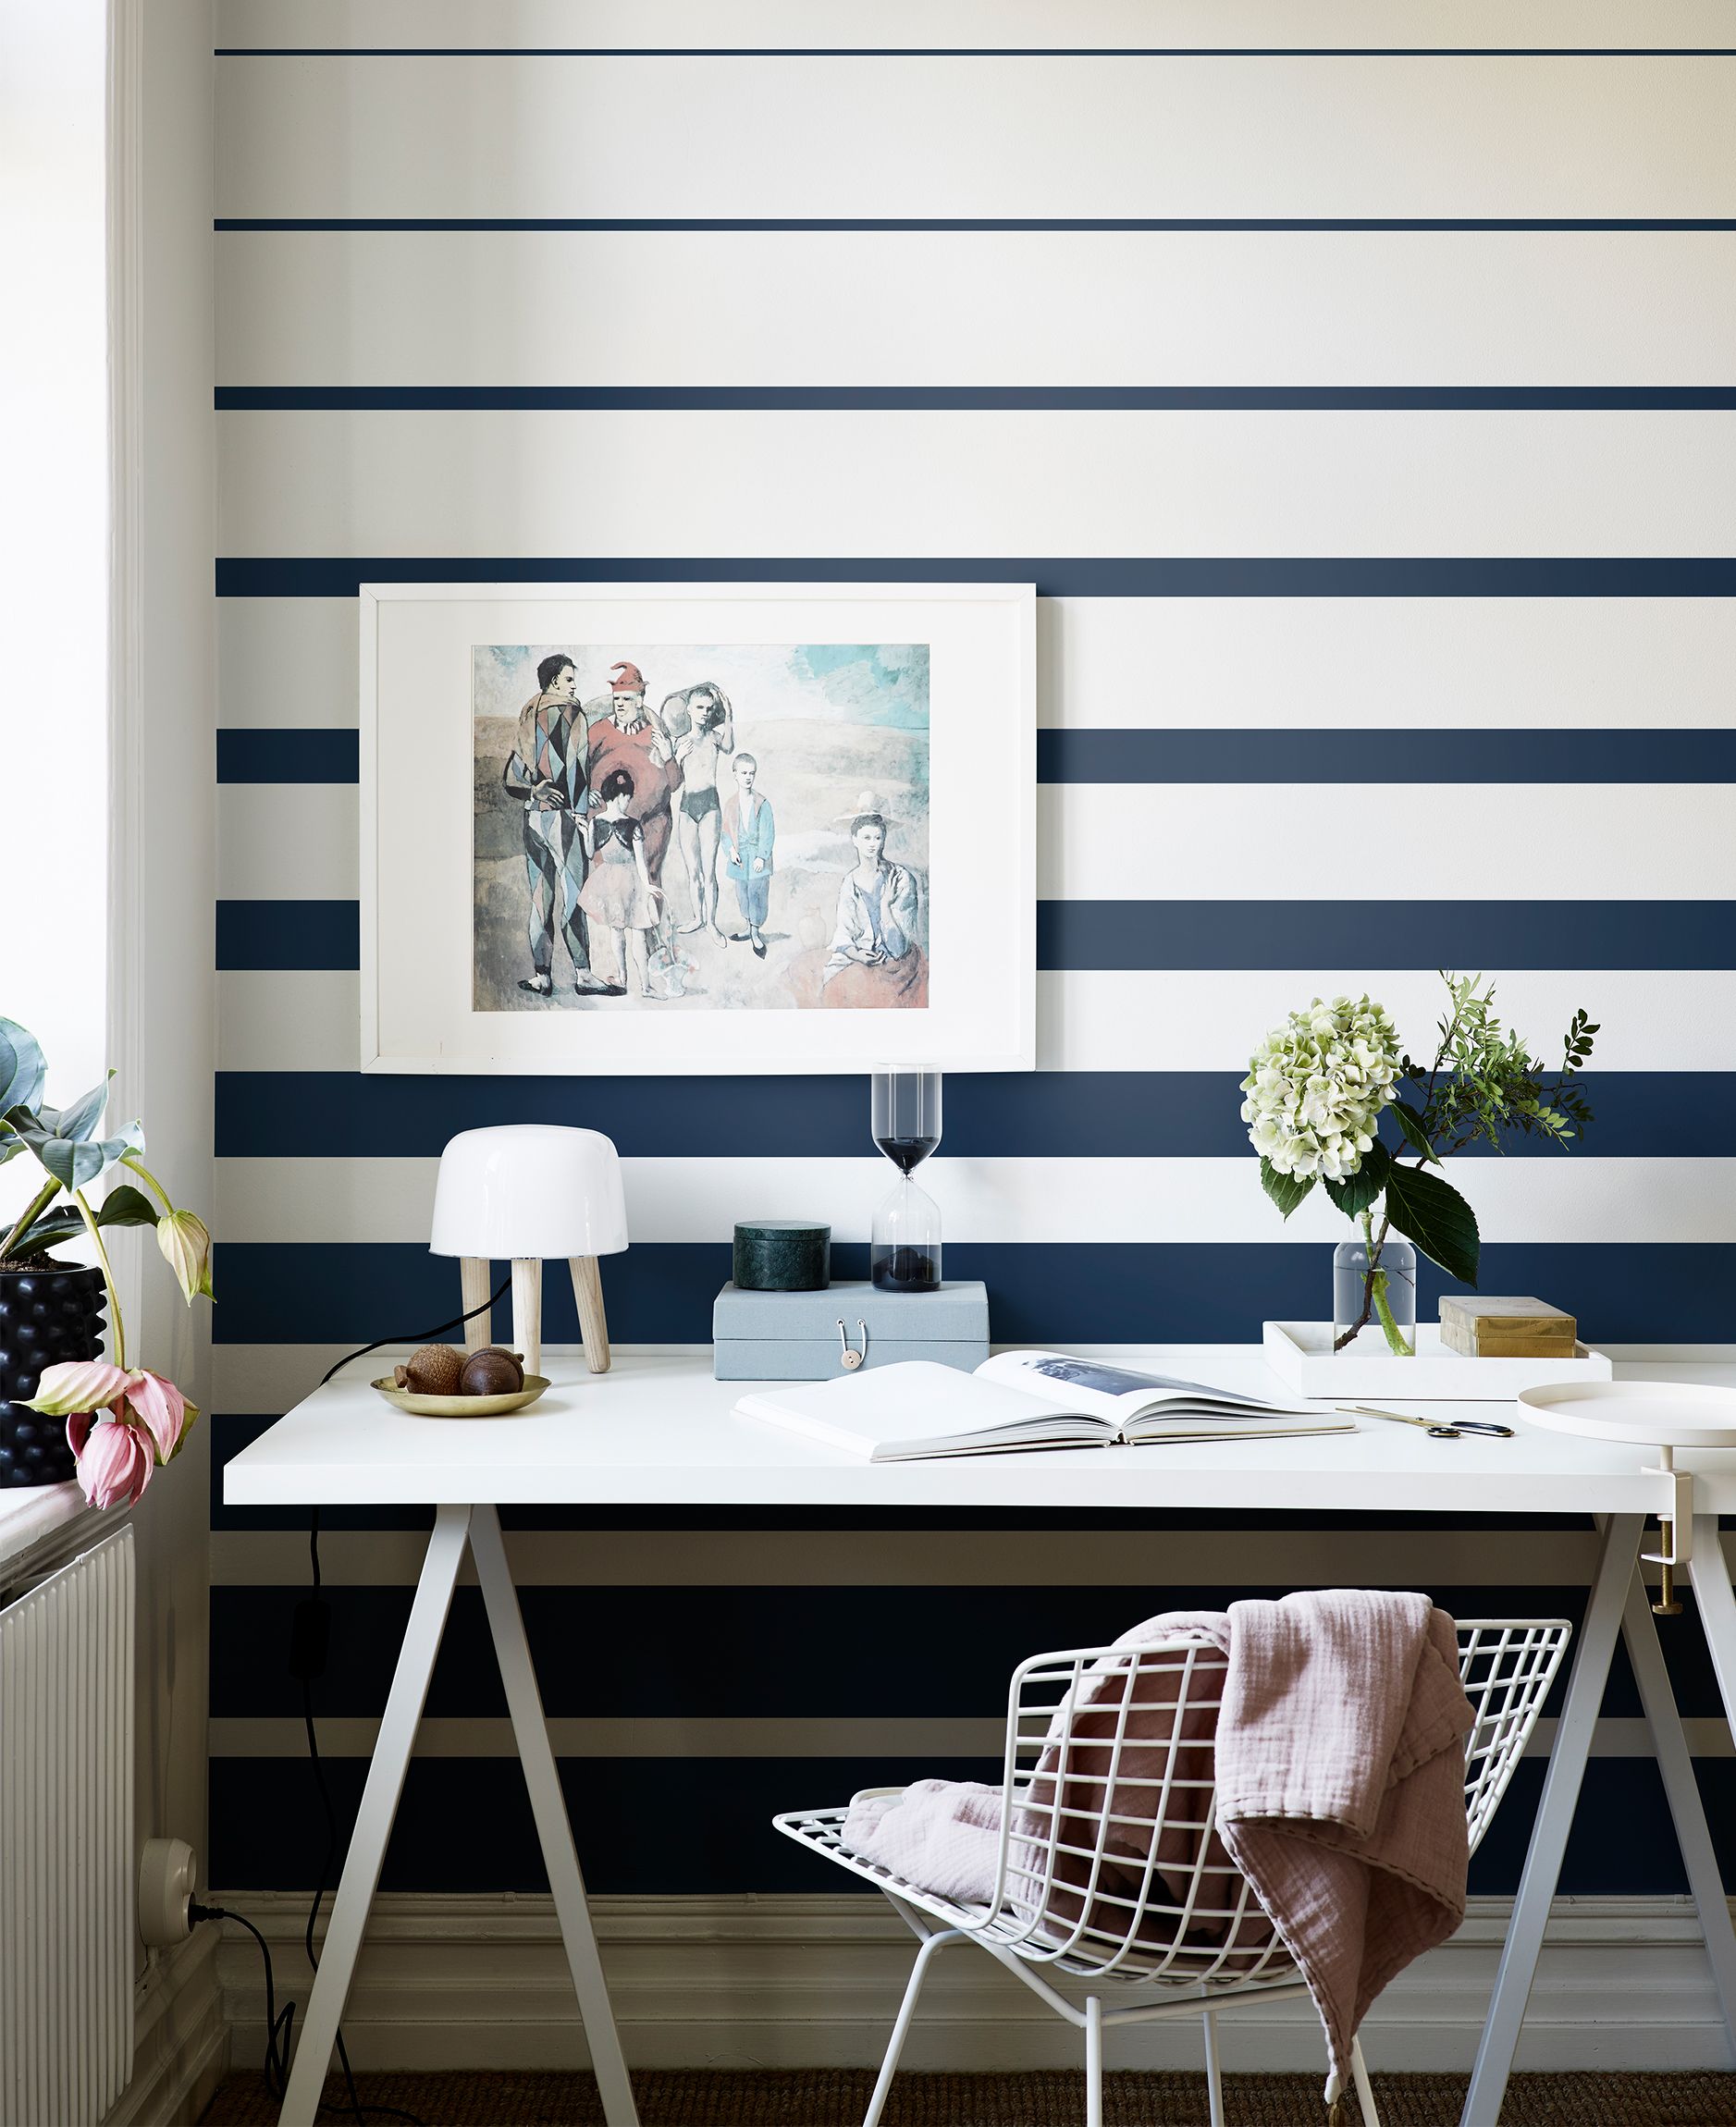 Beyond Walls: Creative Incorporation Of Wallpaper In Bedroom Design